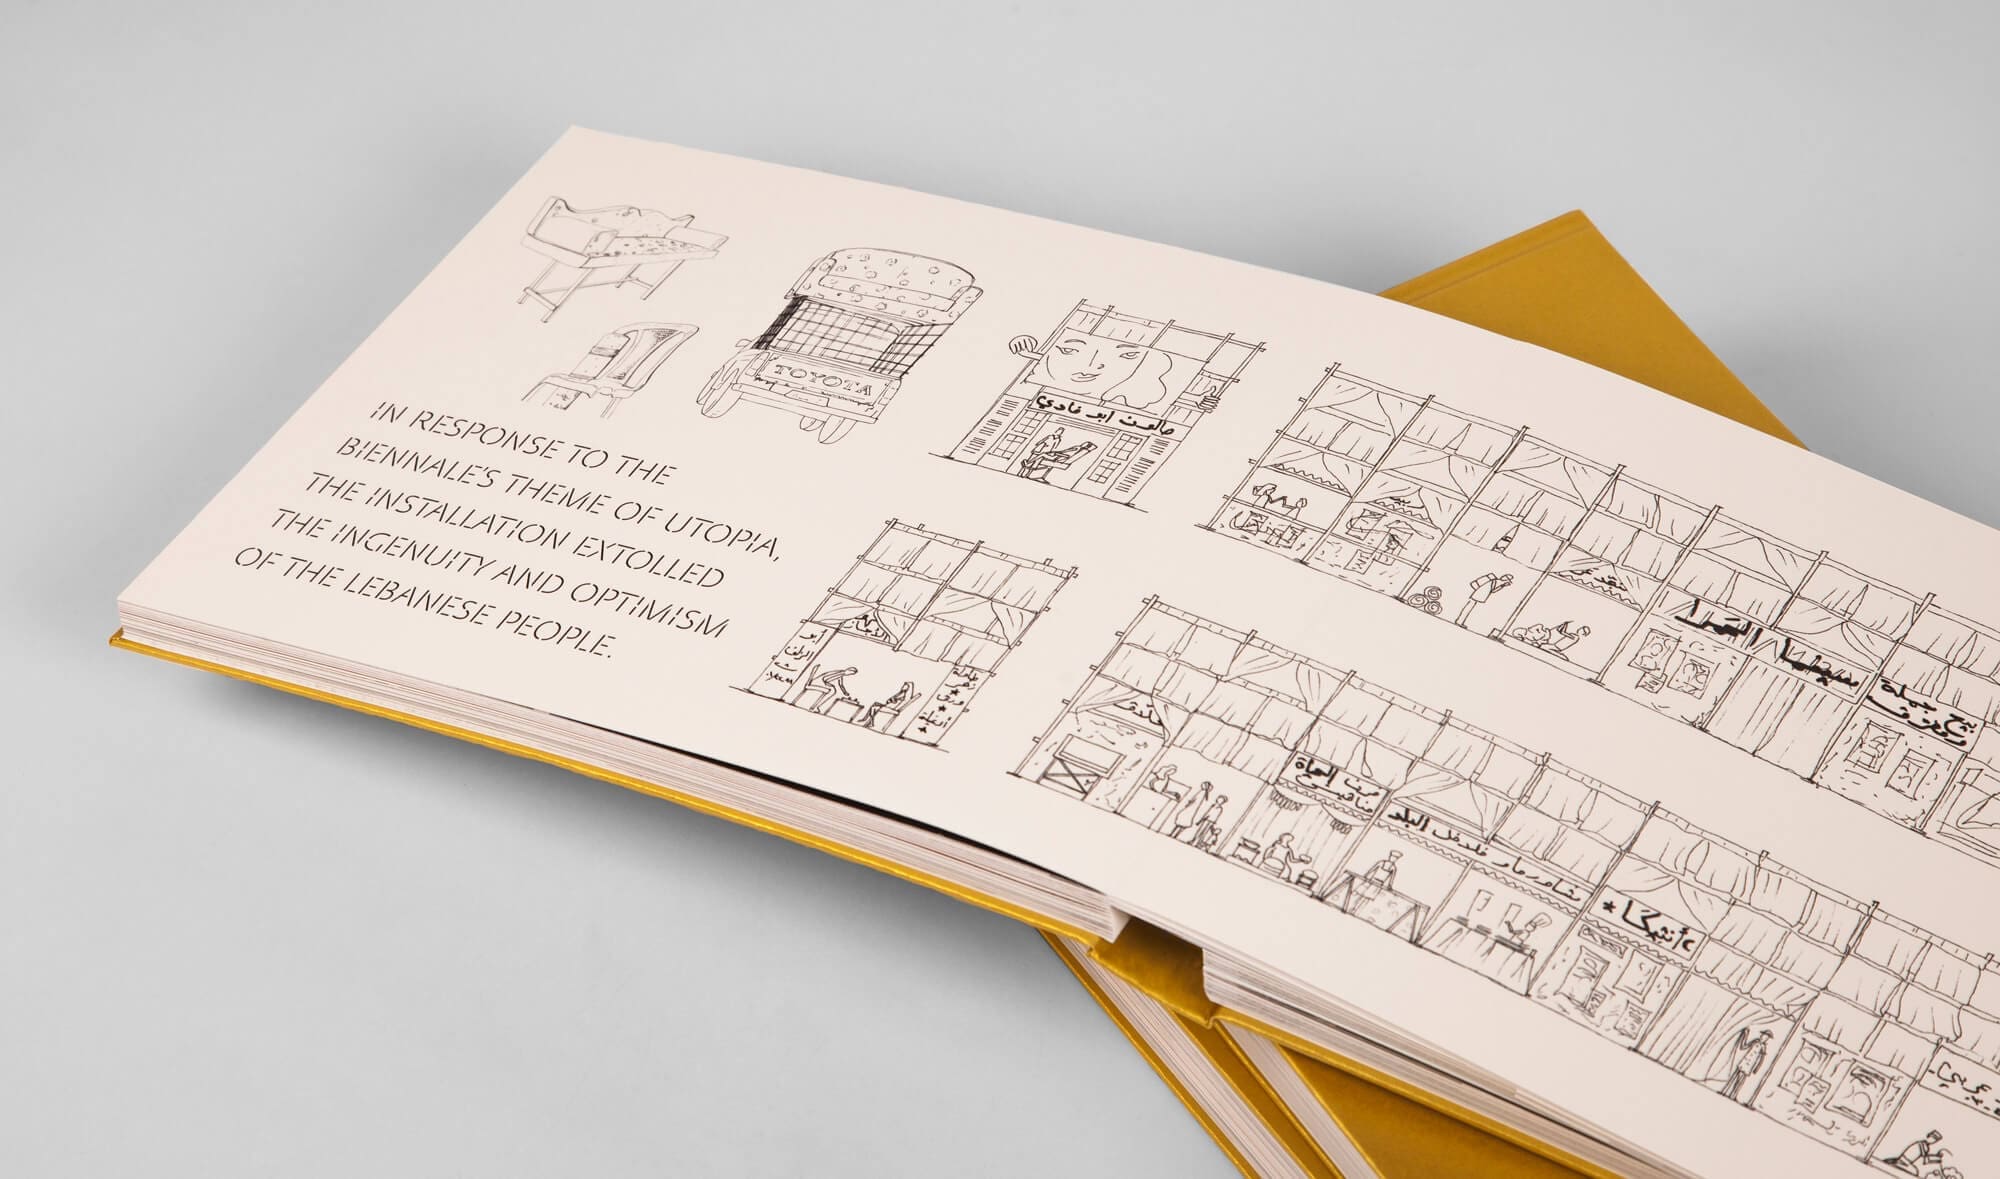 une page de croquis de l'architecte ponctue le livre dessiné par ichetkar